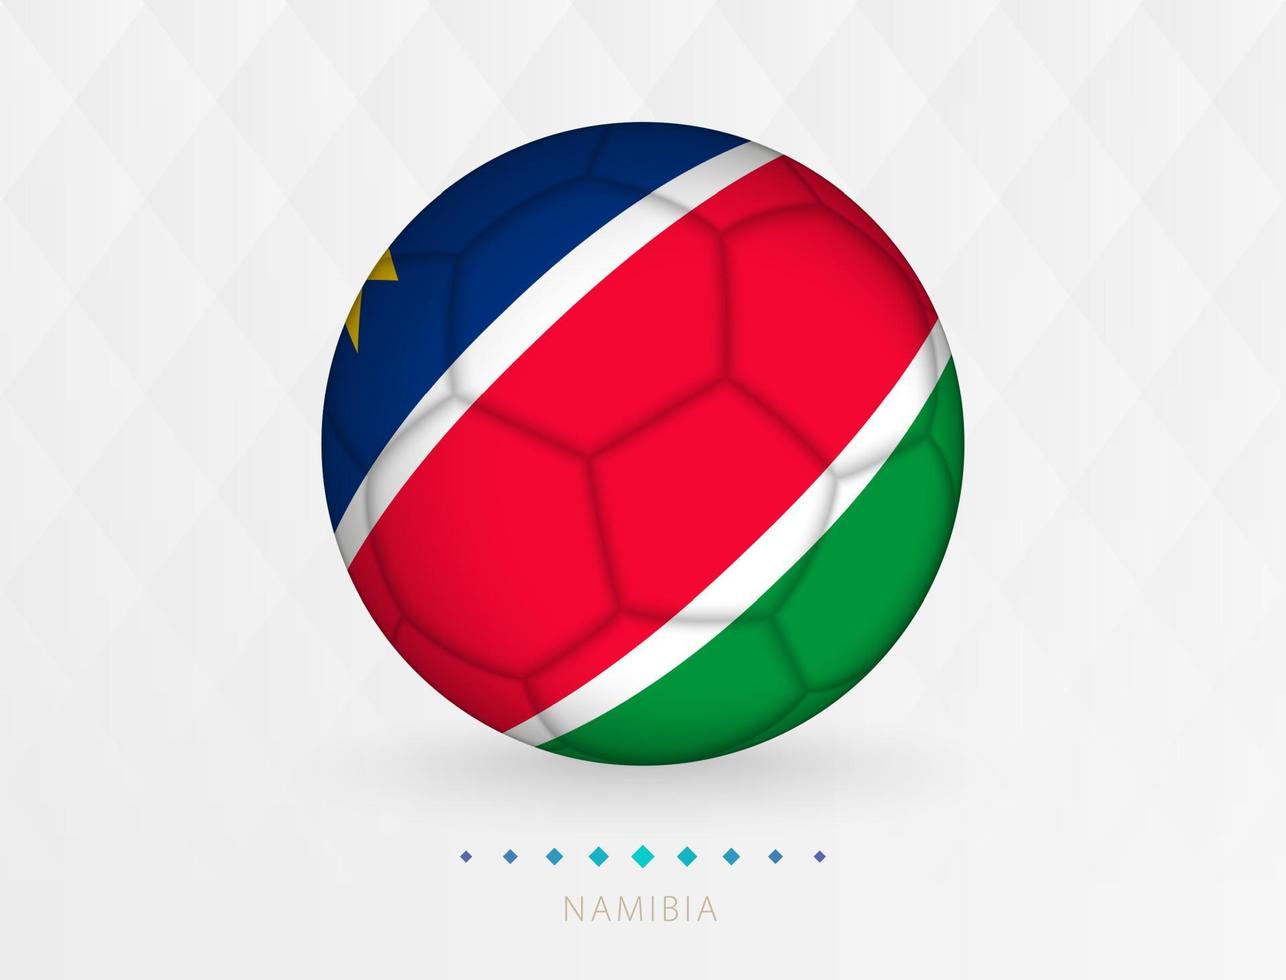 Amerikaans voetbal bal met Namibië vlag patroon, voetbal bal met vlag van Namibië nationaal team. vector